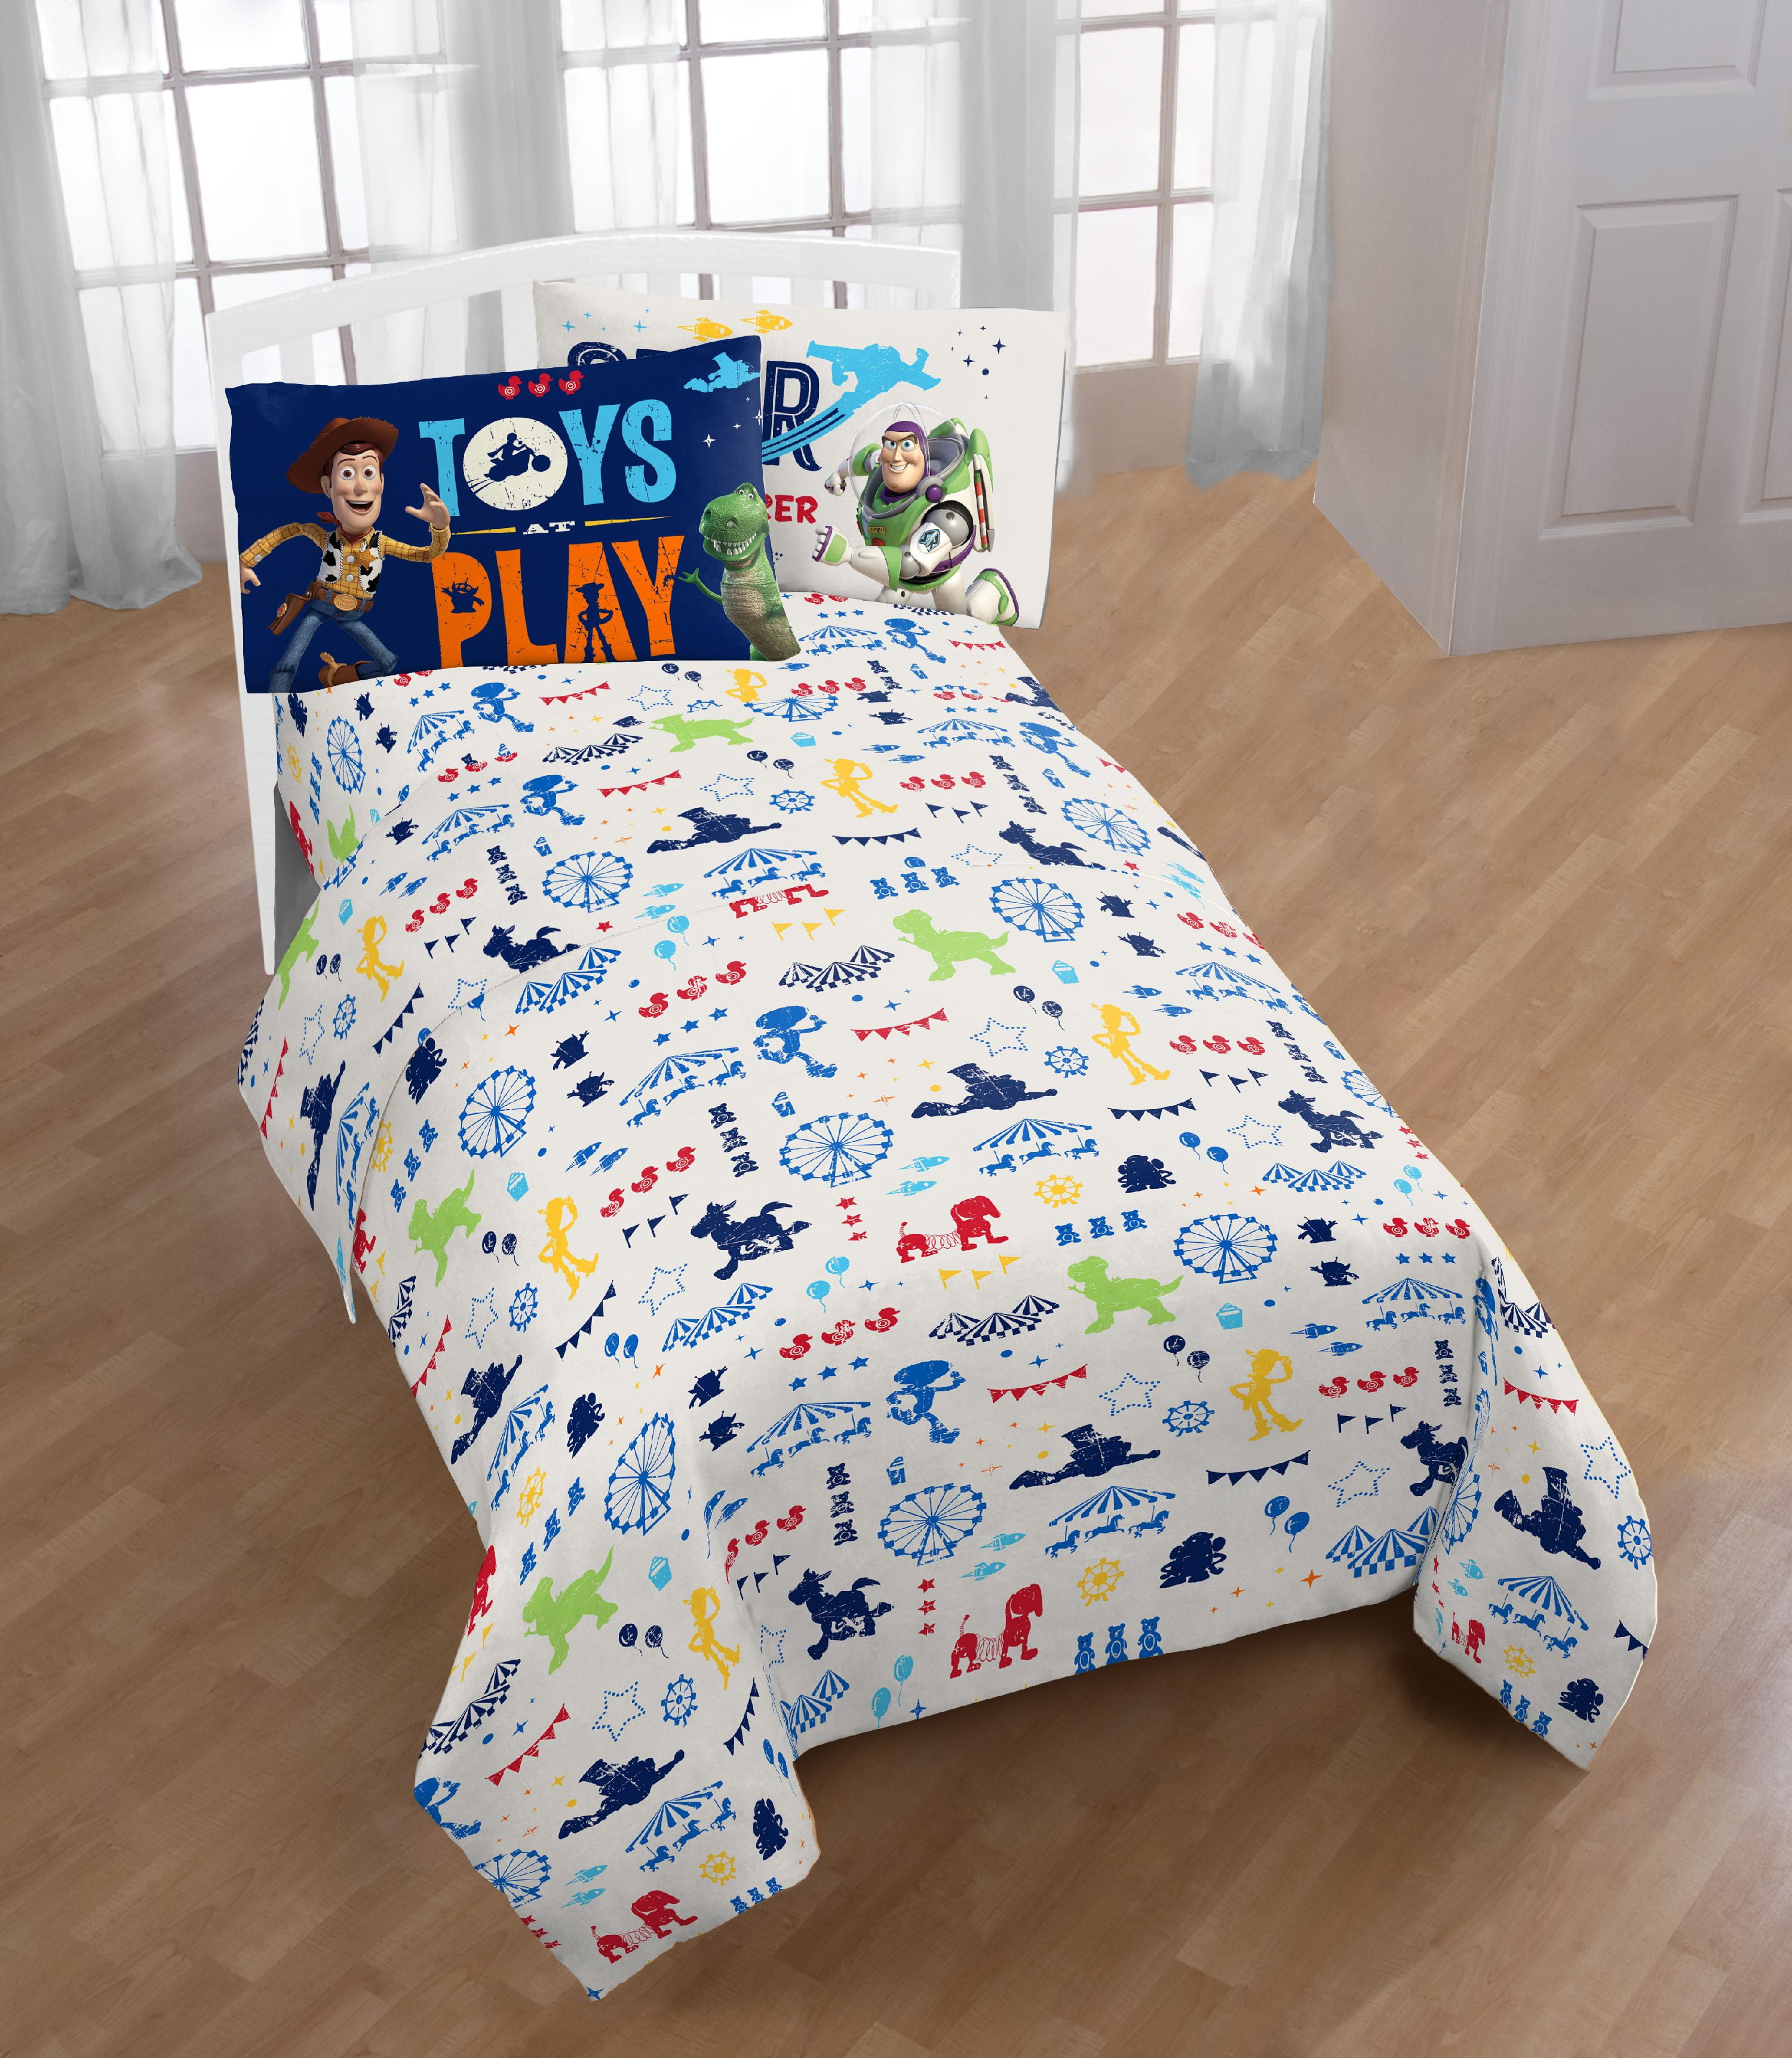 Disney-Toy story 4 Single Duvet Quilt Cover /& Pillowcase Kids Childrens Bedroom Bedding Set